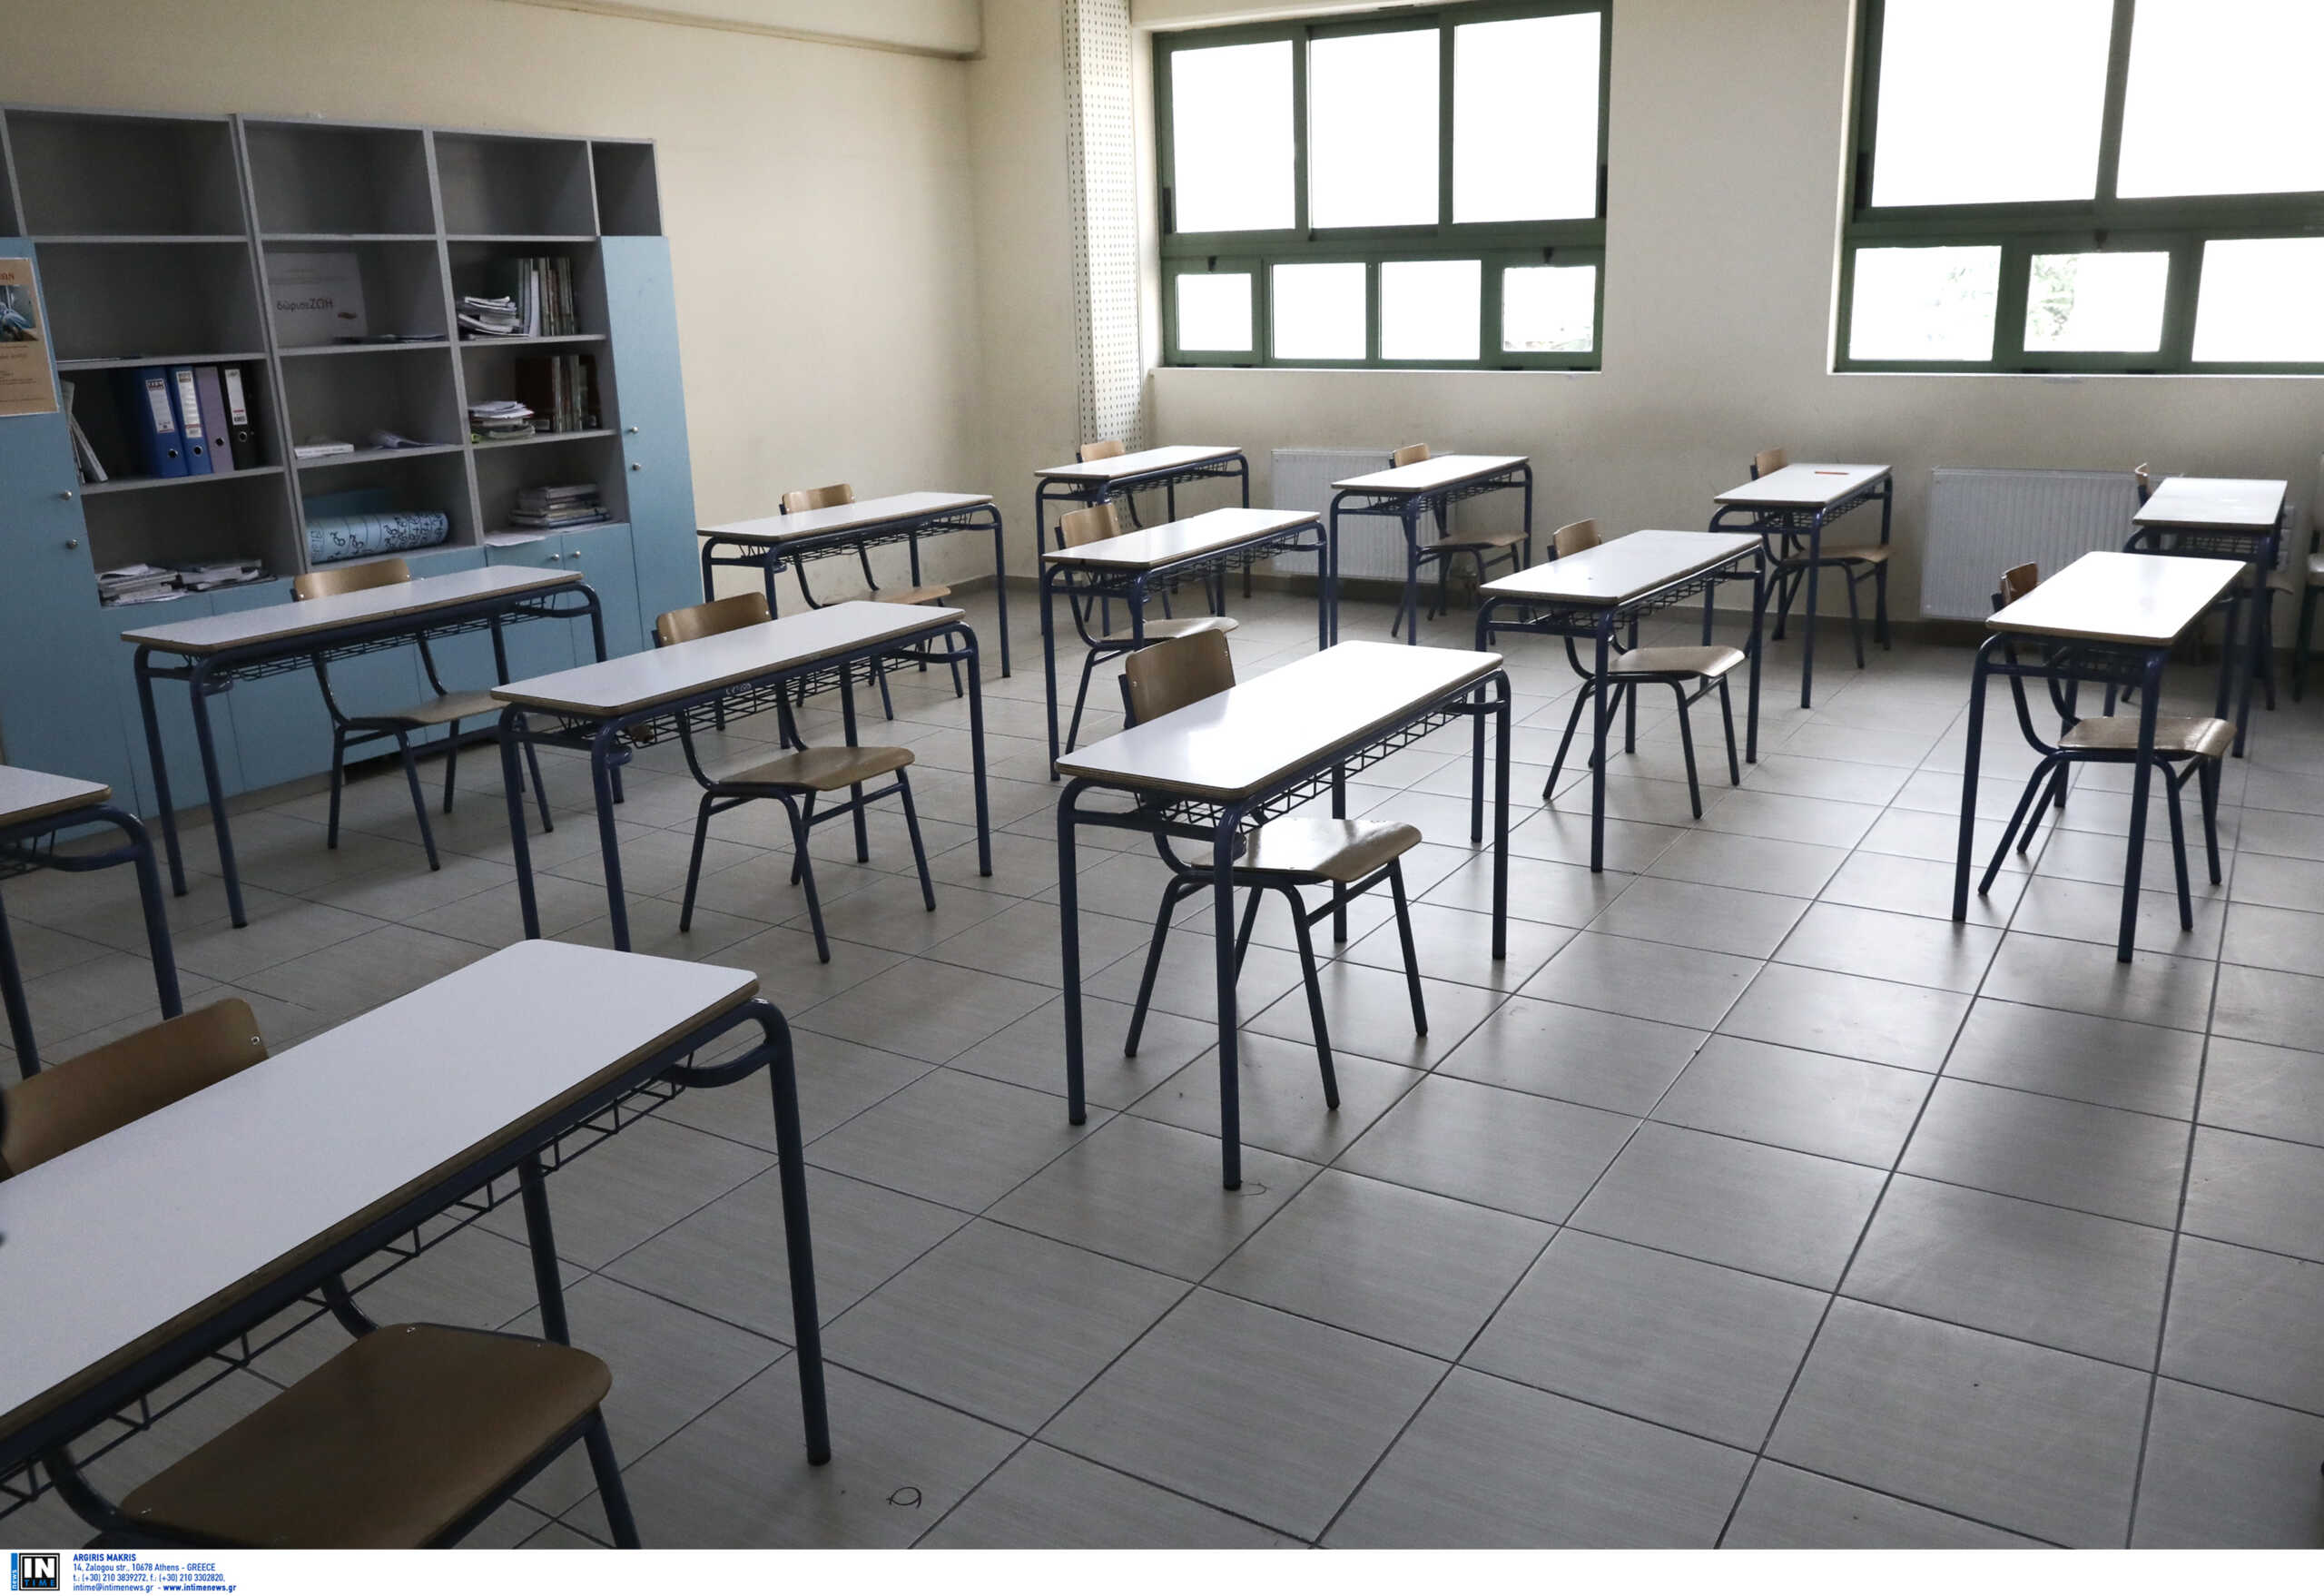 Κορονοϊός: Τέλος τα μέτρα στα σχολεία – Απουσίες στους μαθητές που είναι θετικοί